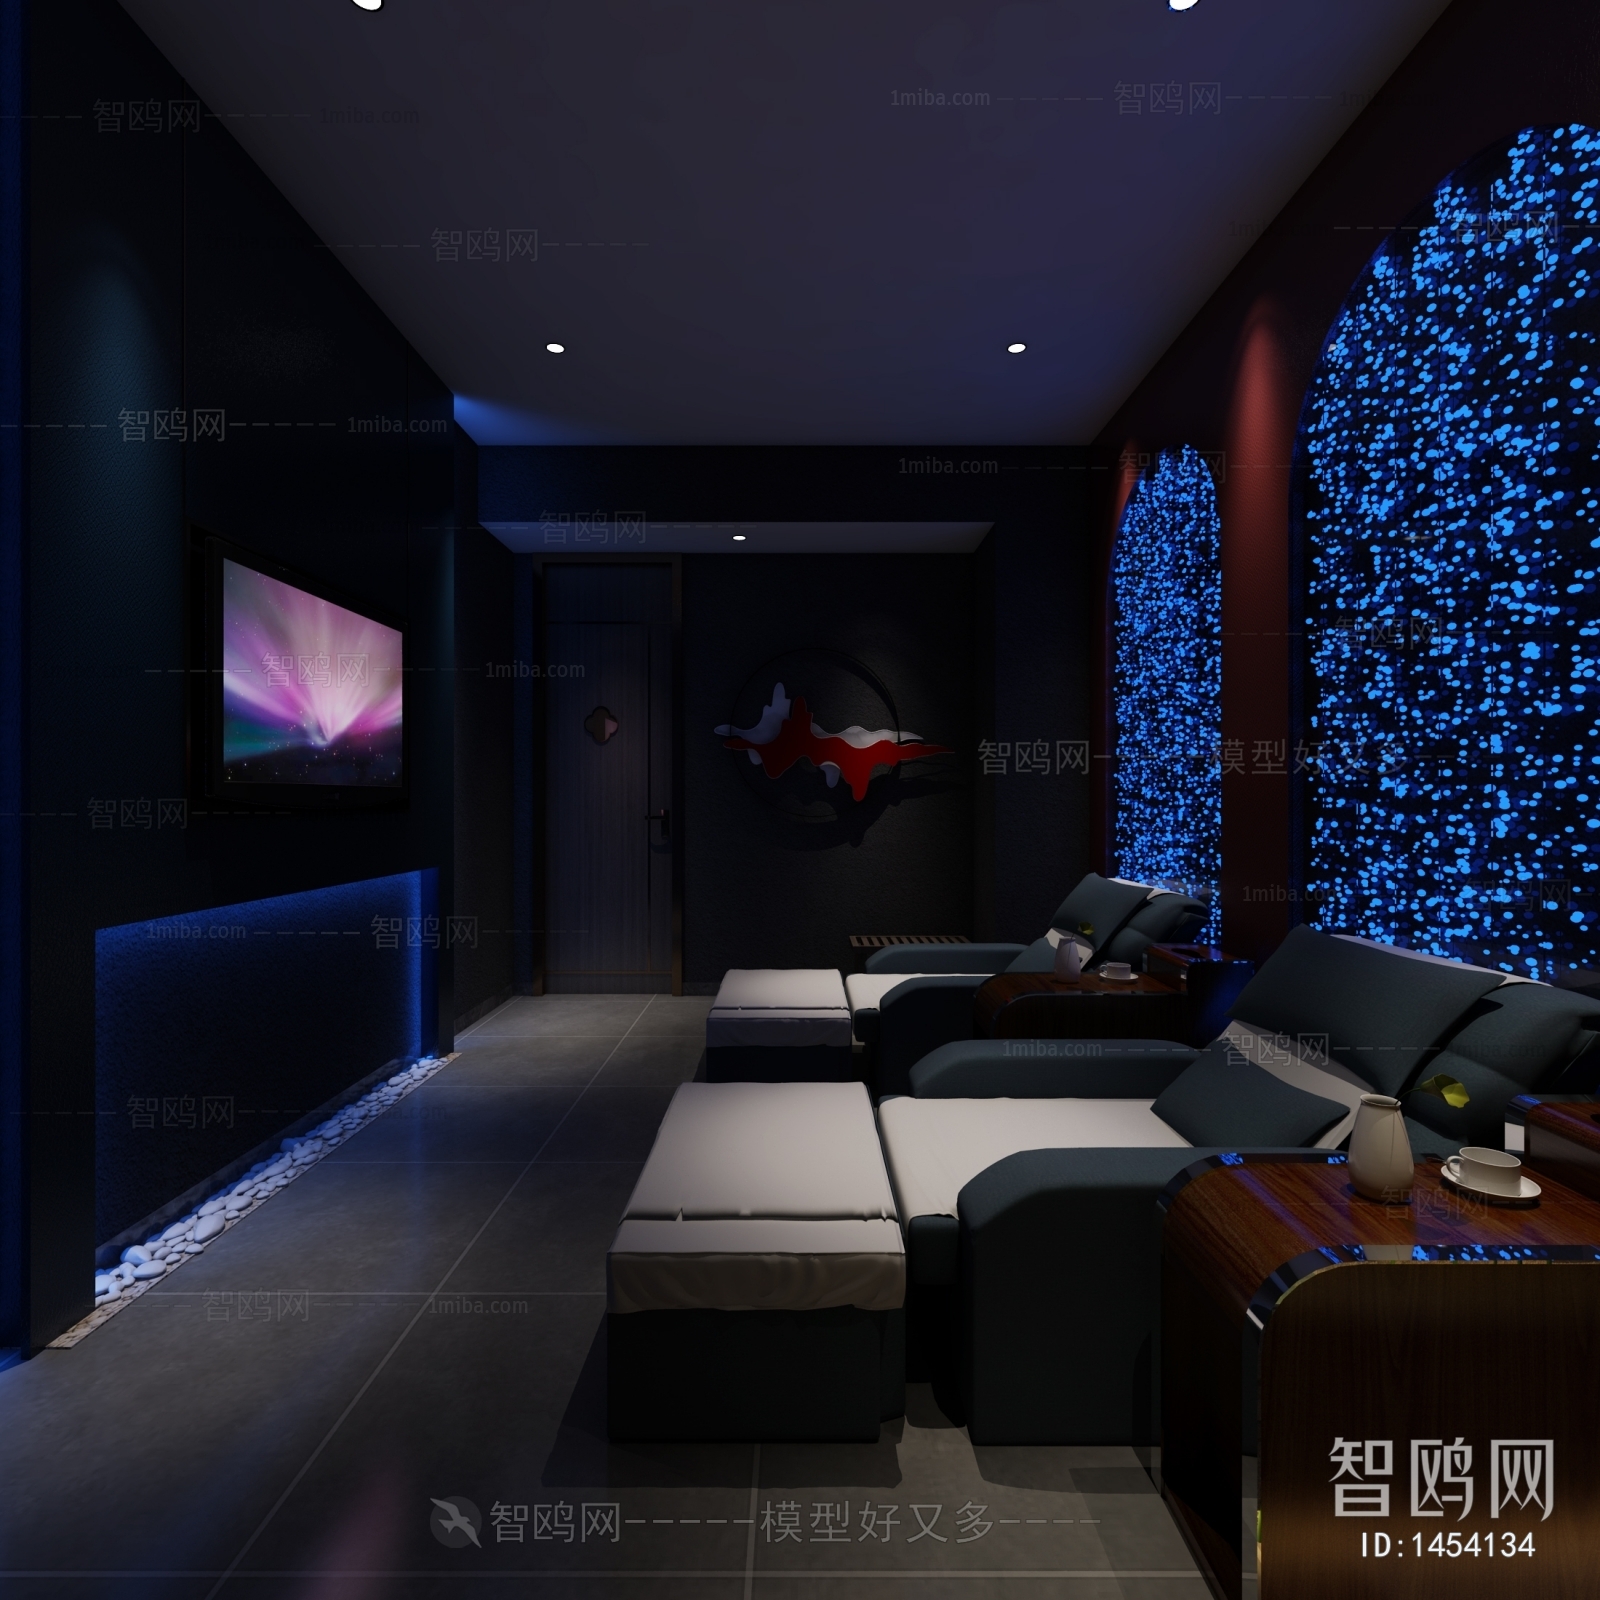 多场景-新中式洗浴中心前台+休息室